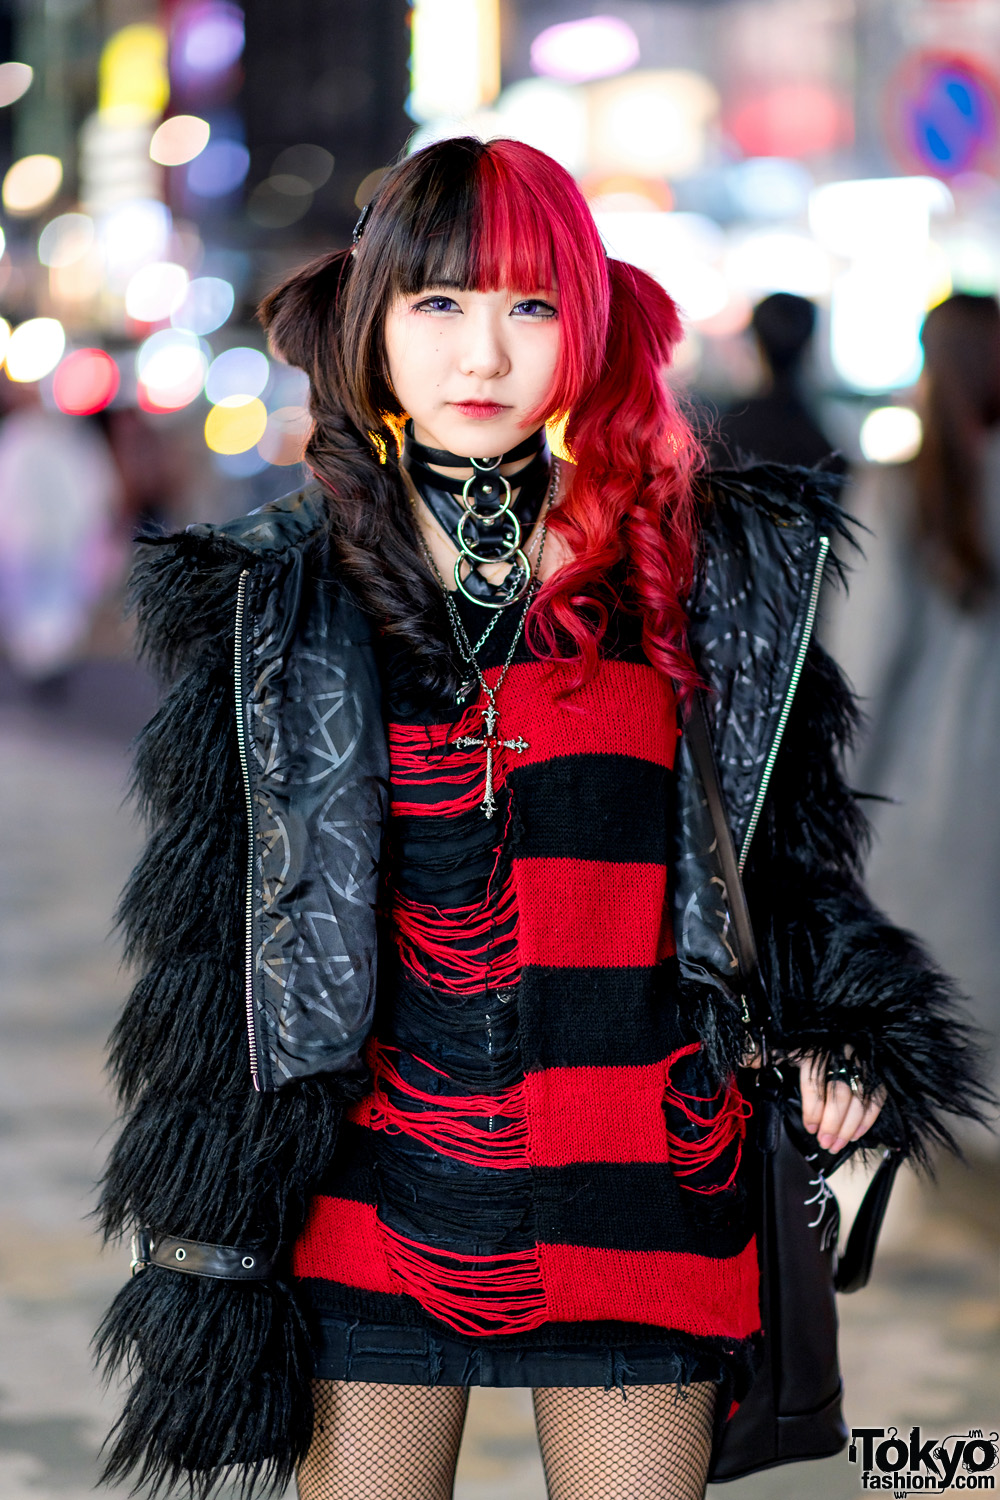 Black & Red Streetwear Look in Harajuku w/ Long Curly Hair, 3/4